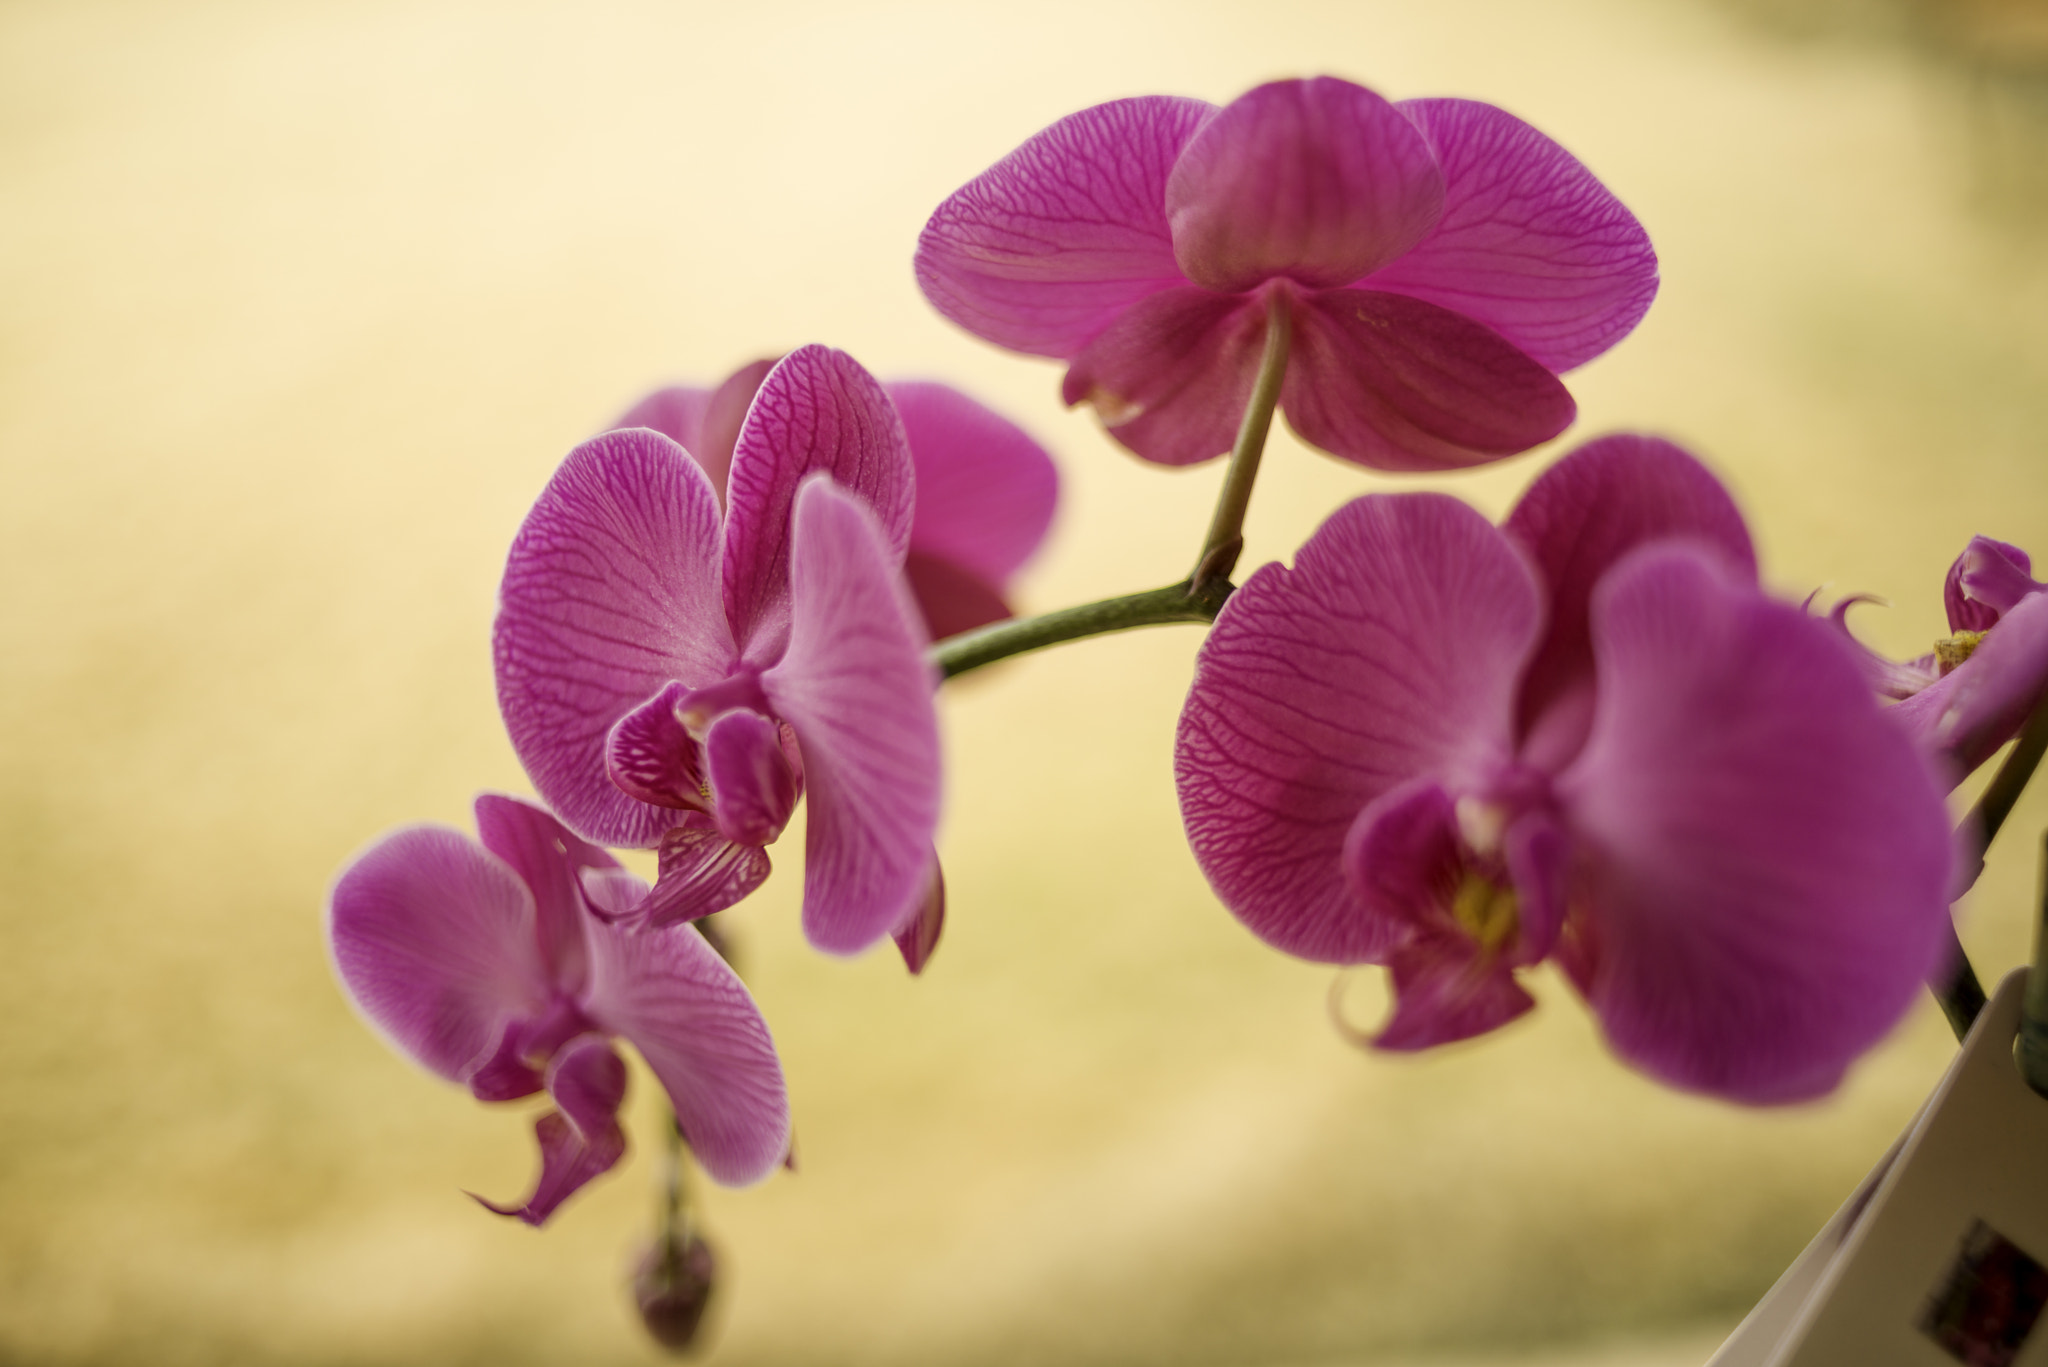 AF Nikkor 35mm f/2 sample photo. Pink orchids photography